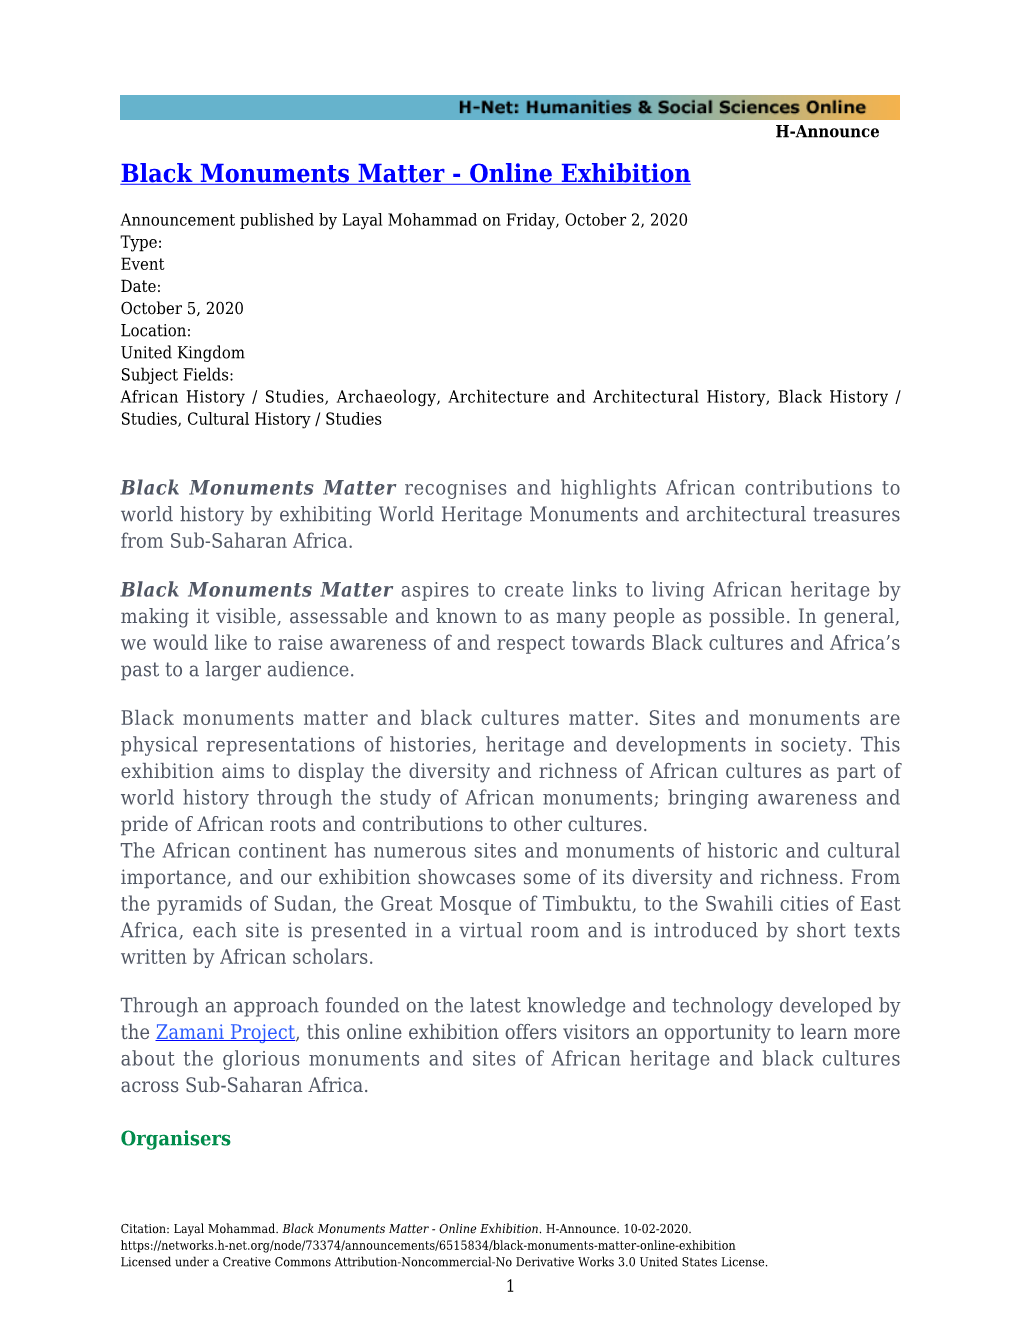 Black Monuments Matter - Online Exhibition